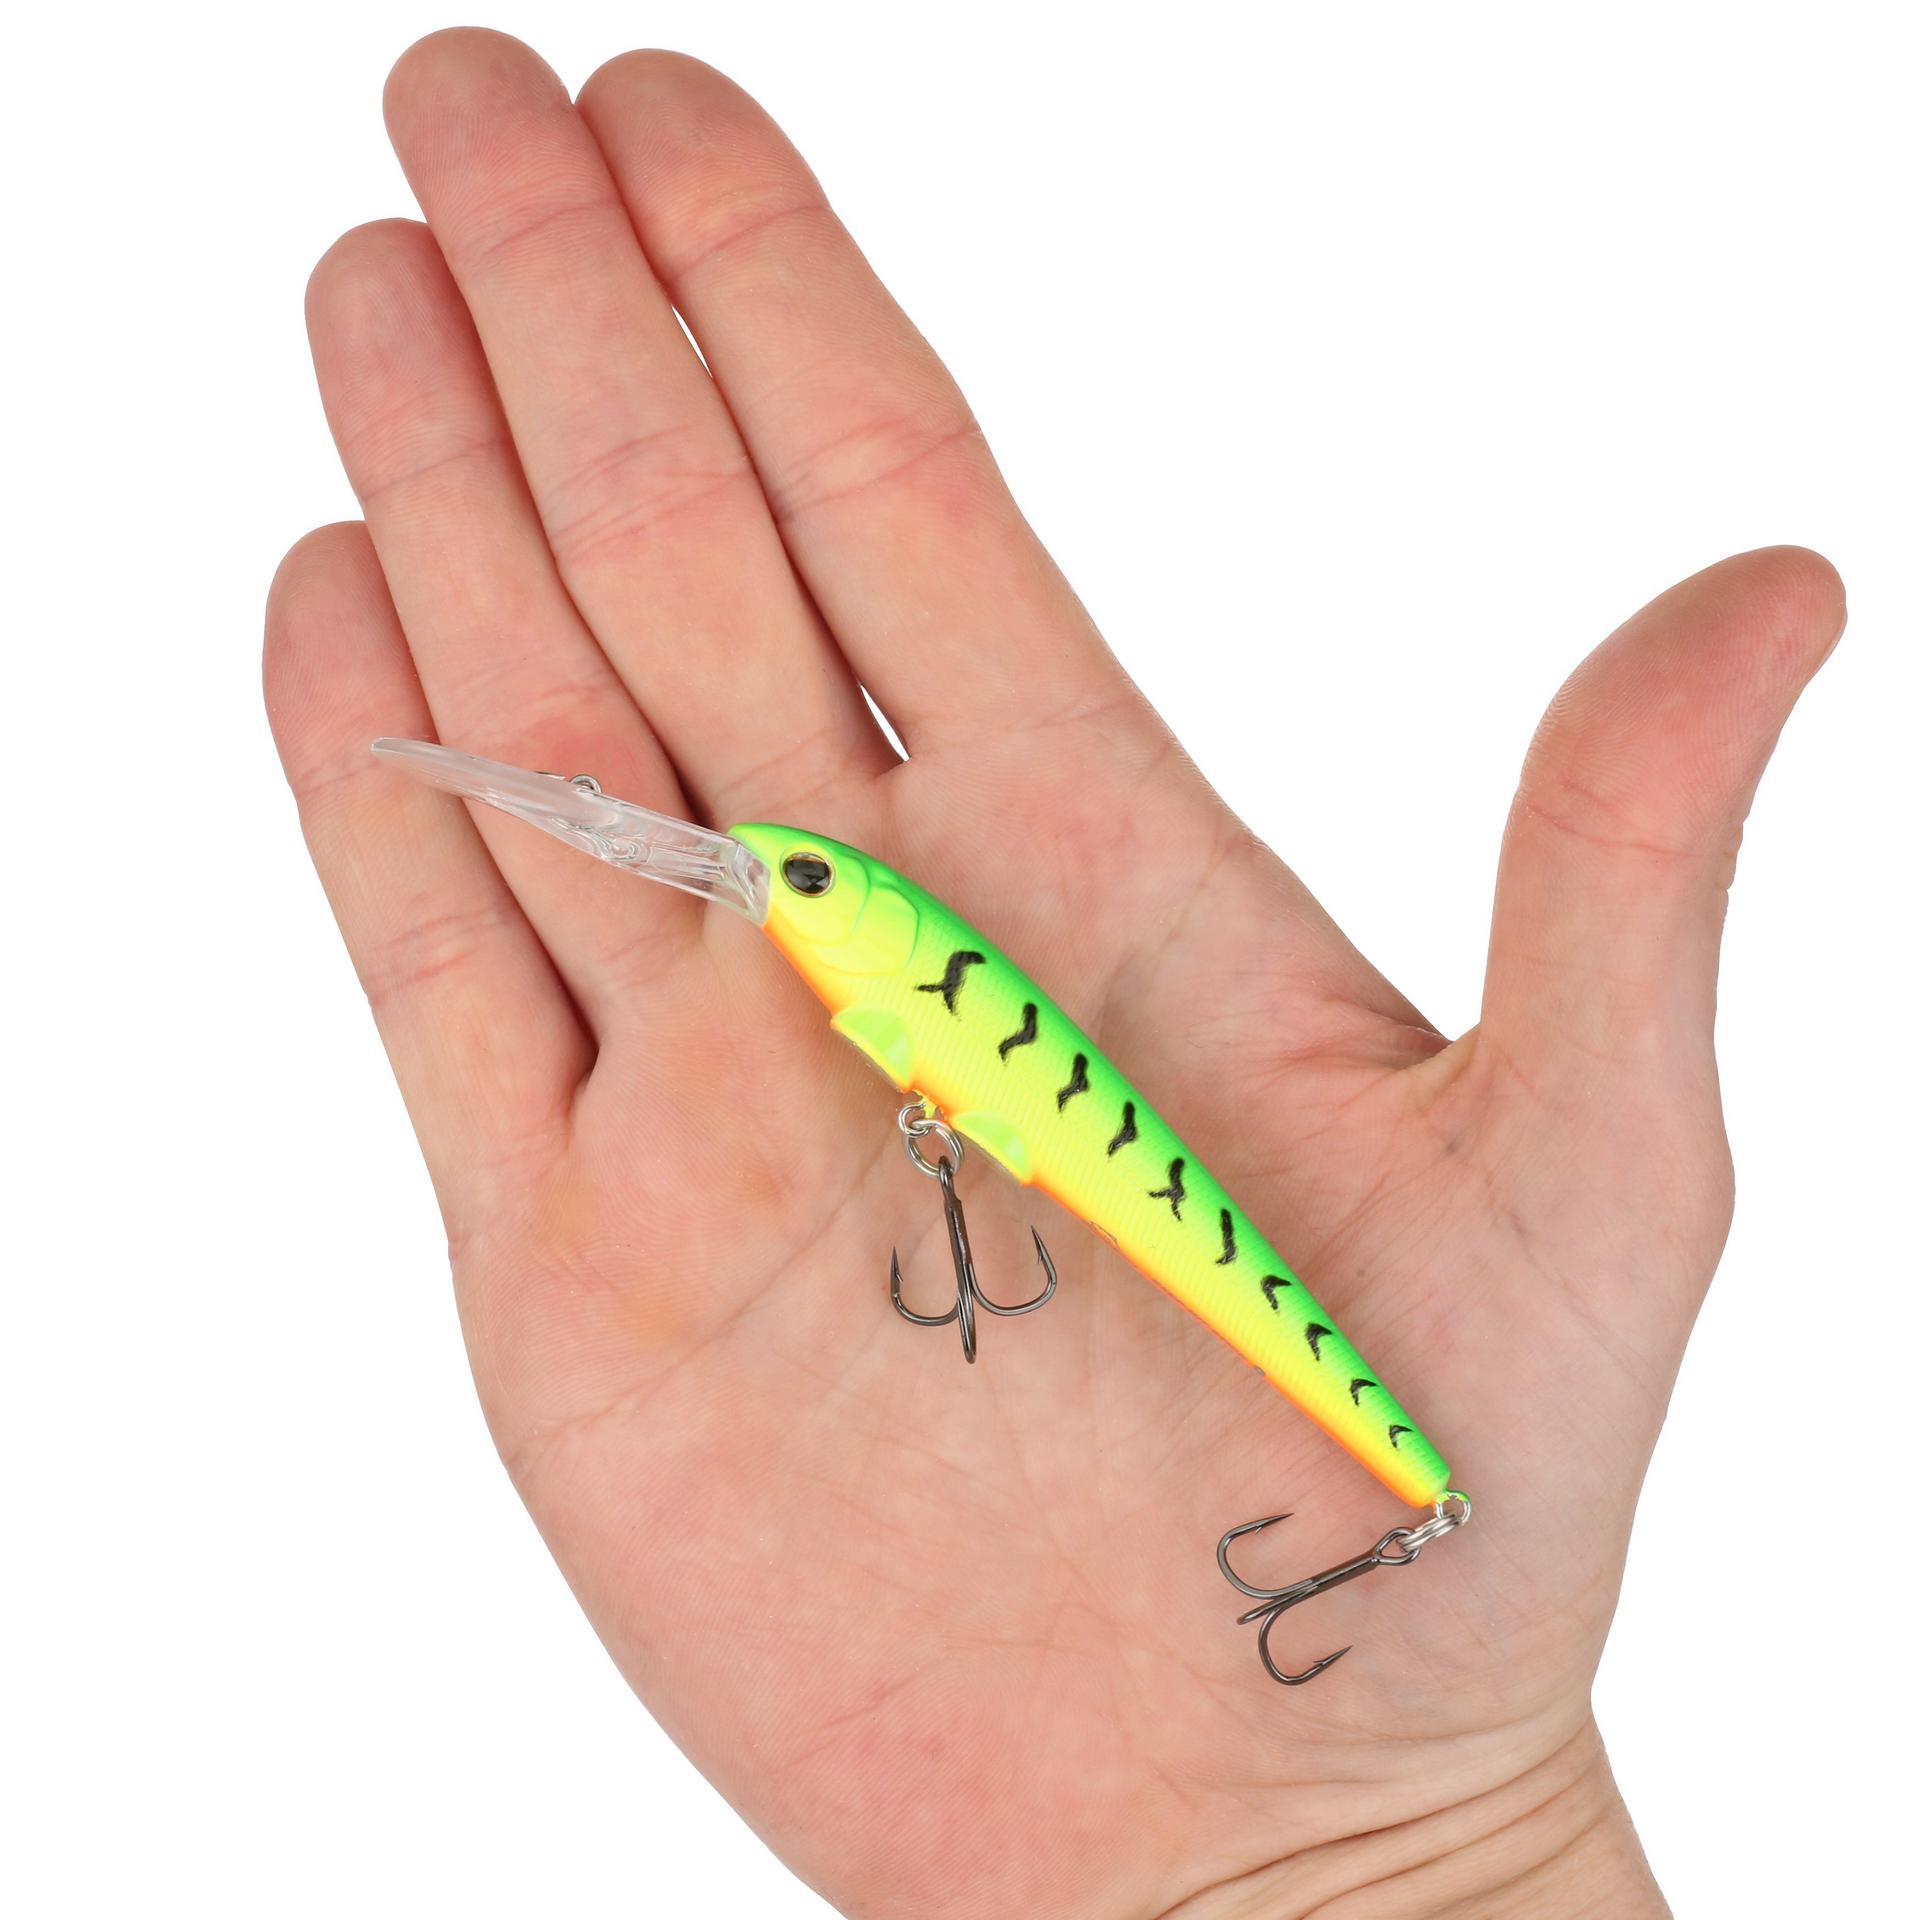 Berkley DeepHitStick 9 Firetiger HAND | Berkley Fishing